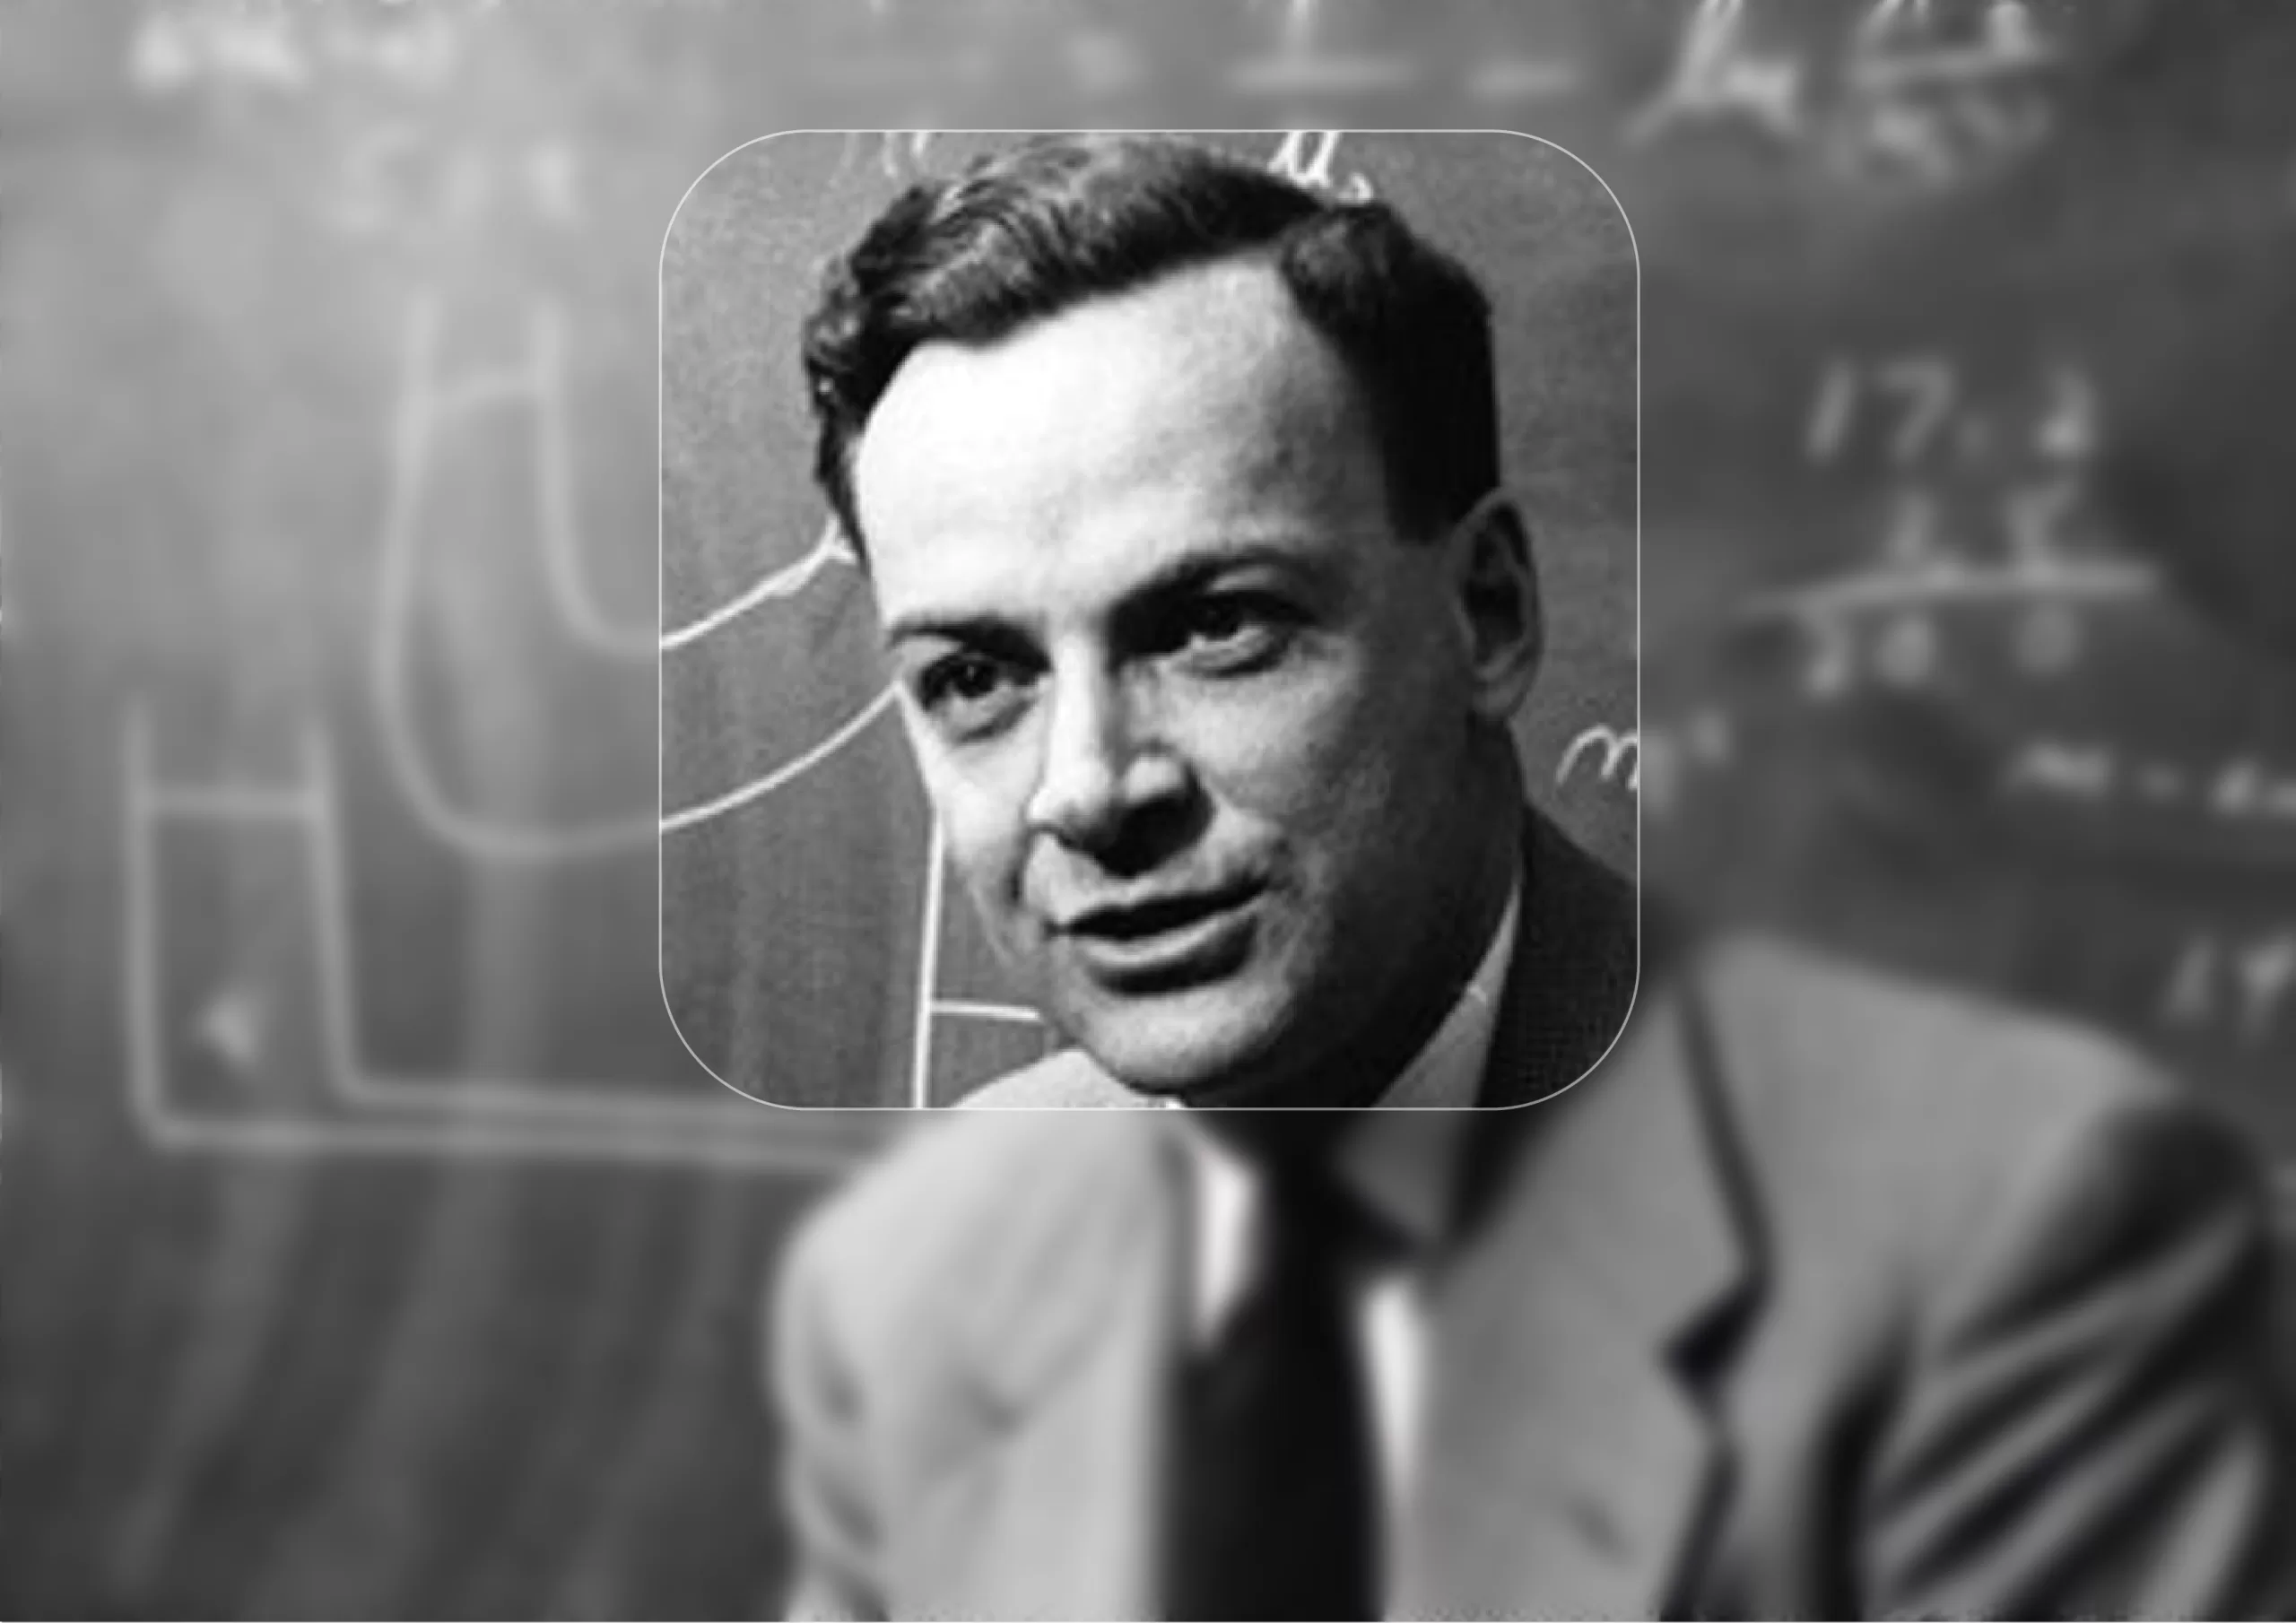 ریچارد فاینمن فیزیکدان آمریکایی و برنده جایزه نوبل فیزیک بود که متخصص مکانیک کوانتوم بود، او فارغ التحصیل دانشگاه MIT و پرینستون بود.